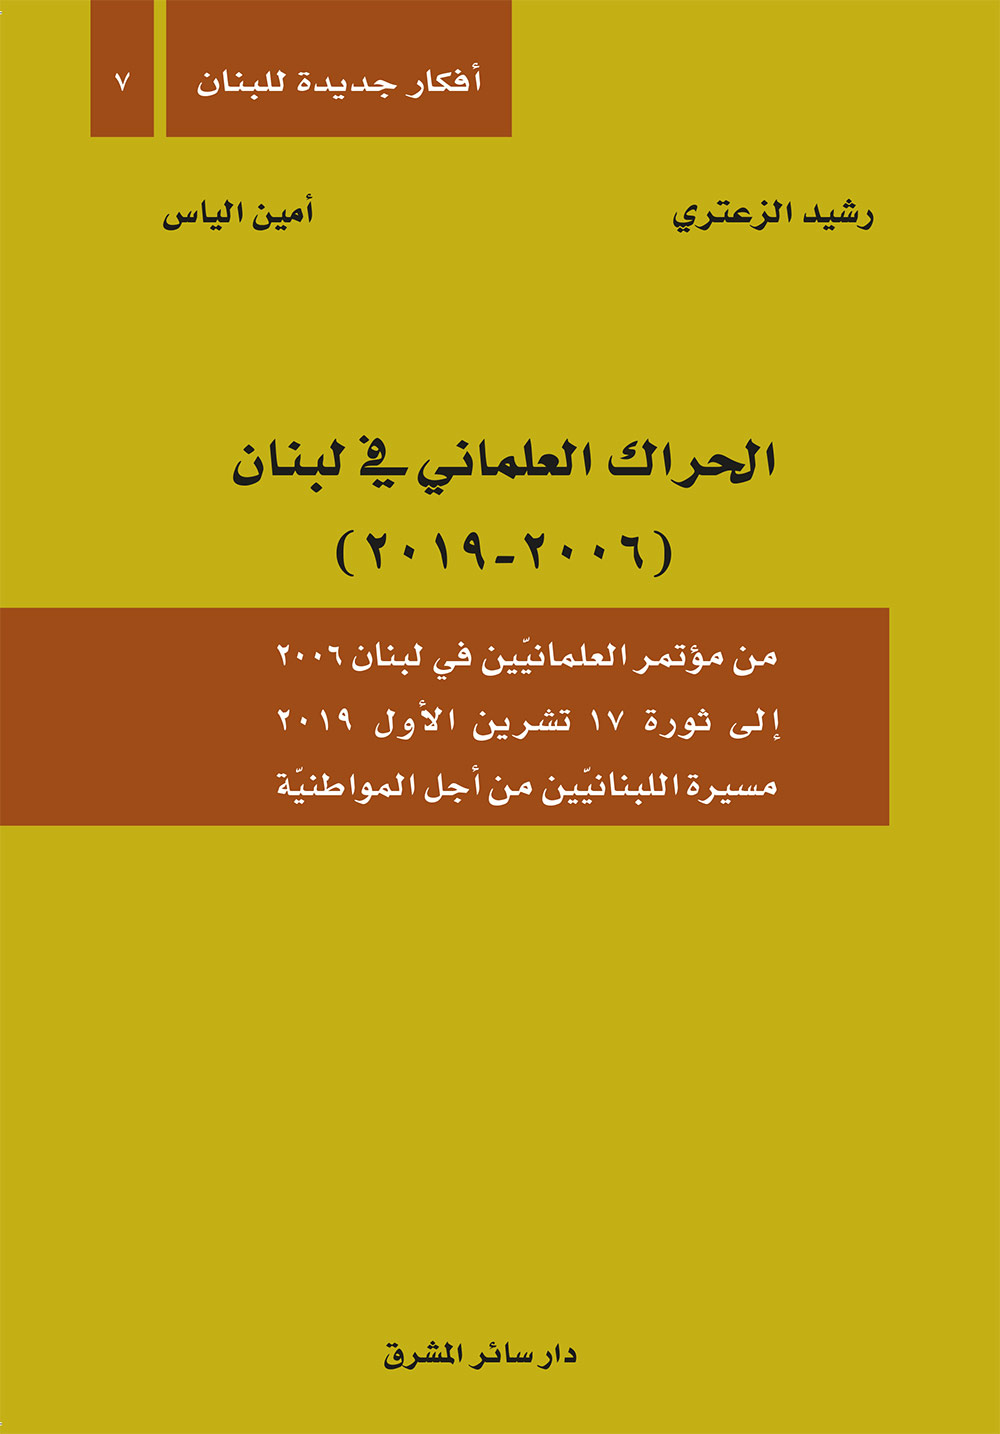 الحراك العلماني في لبنان ( 2006 - 2019 ) : من مؤتمر العلمانية في لبنان 2006 إلى ثورة 17 تشرين الأول 2019 مسيرة اللبنانيين من أجل المواطنية